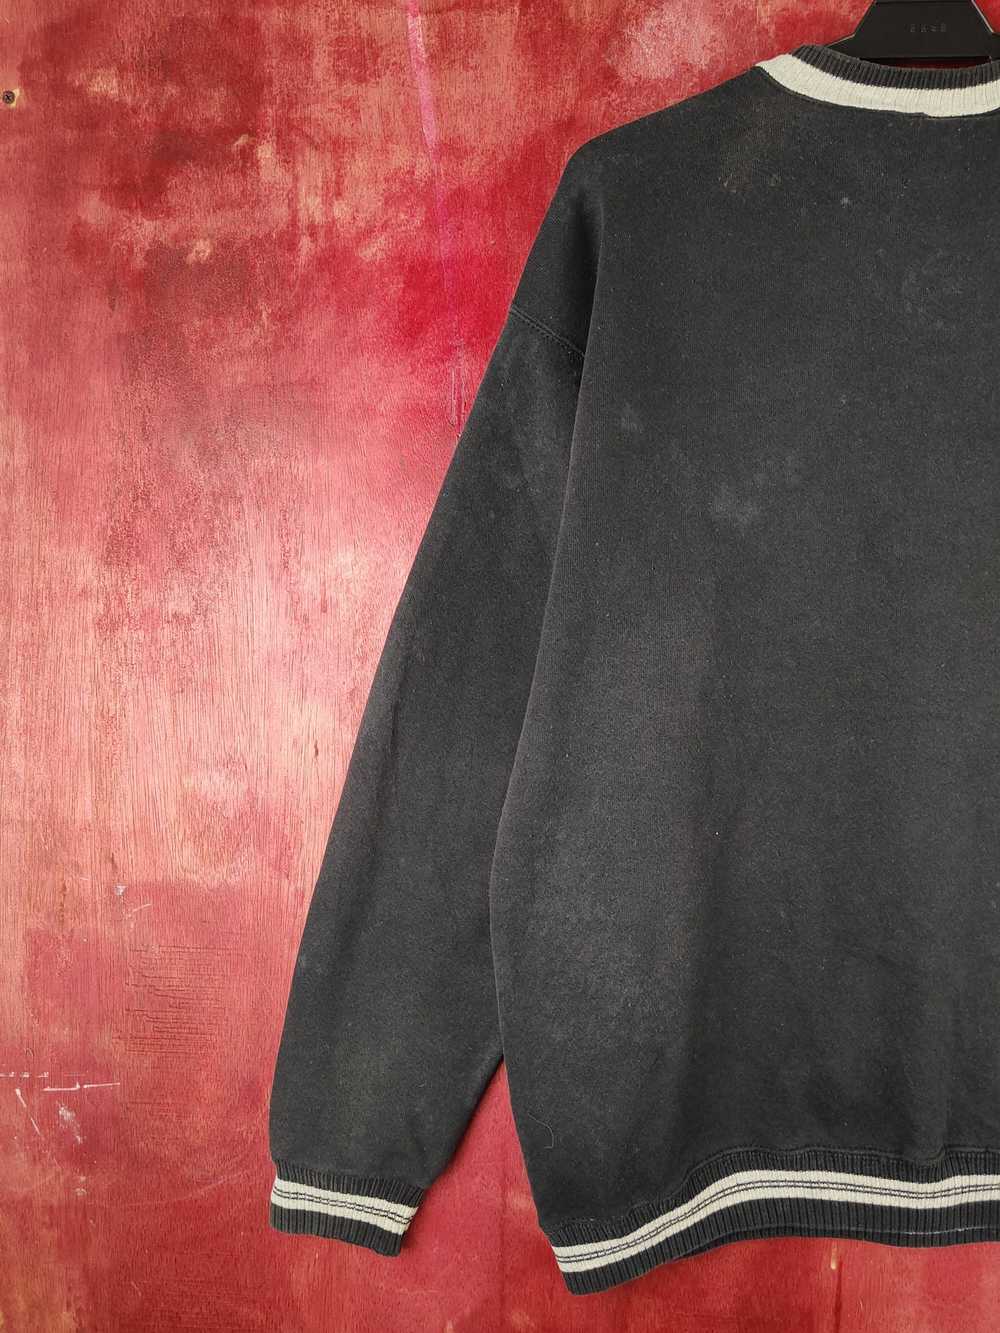 Streetwear × Vintage Discus Black Faded Sweatshir… - image 8